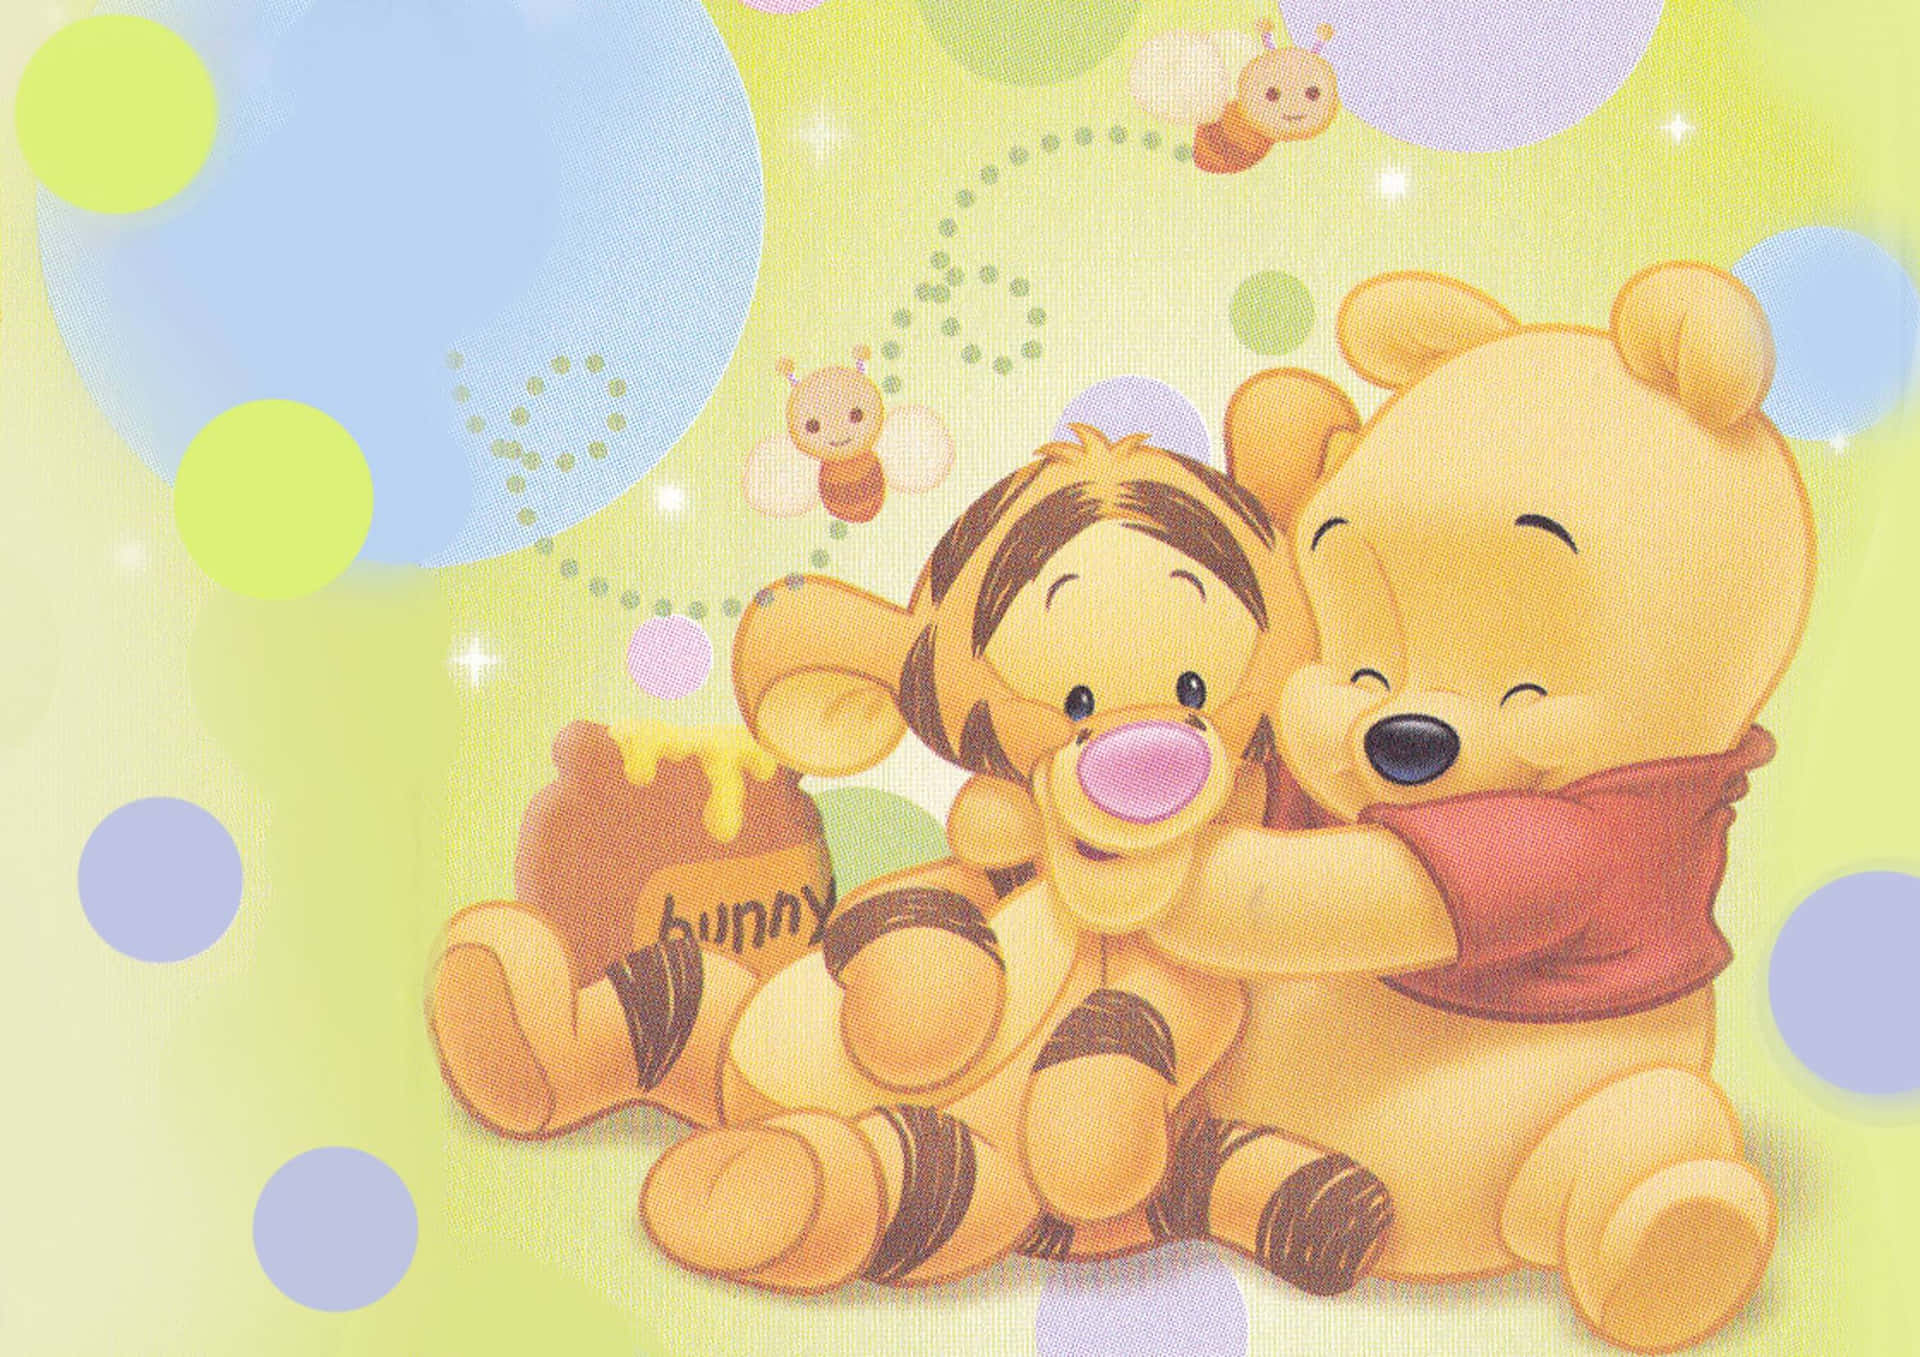 Winnie The Pooh nyder de rolige øjeblikke i livet. Wallpaper